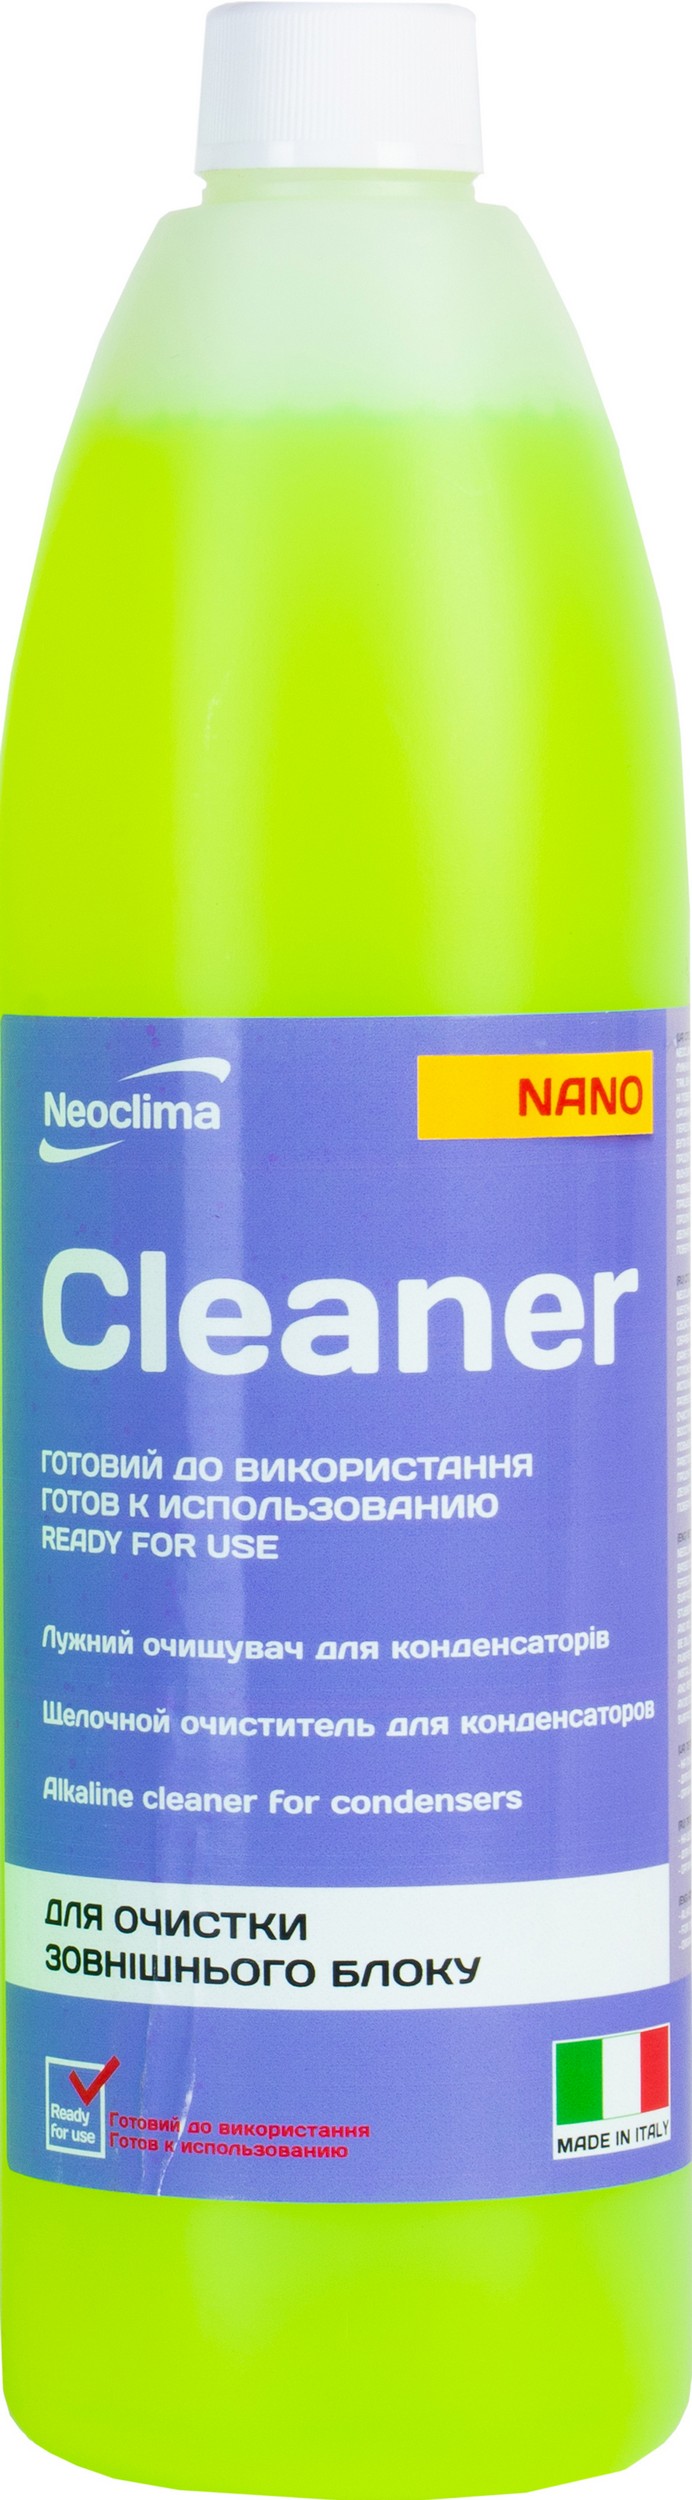 Характеристики очиститель внешнего блока Neoclima Cleaner Nano 1 л, спрей